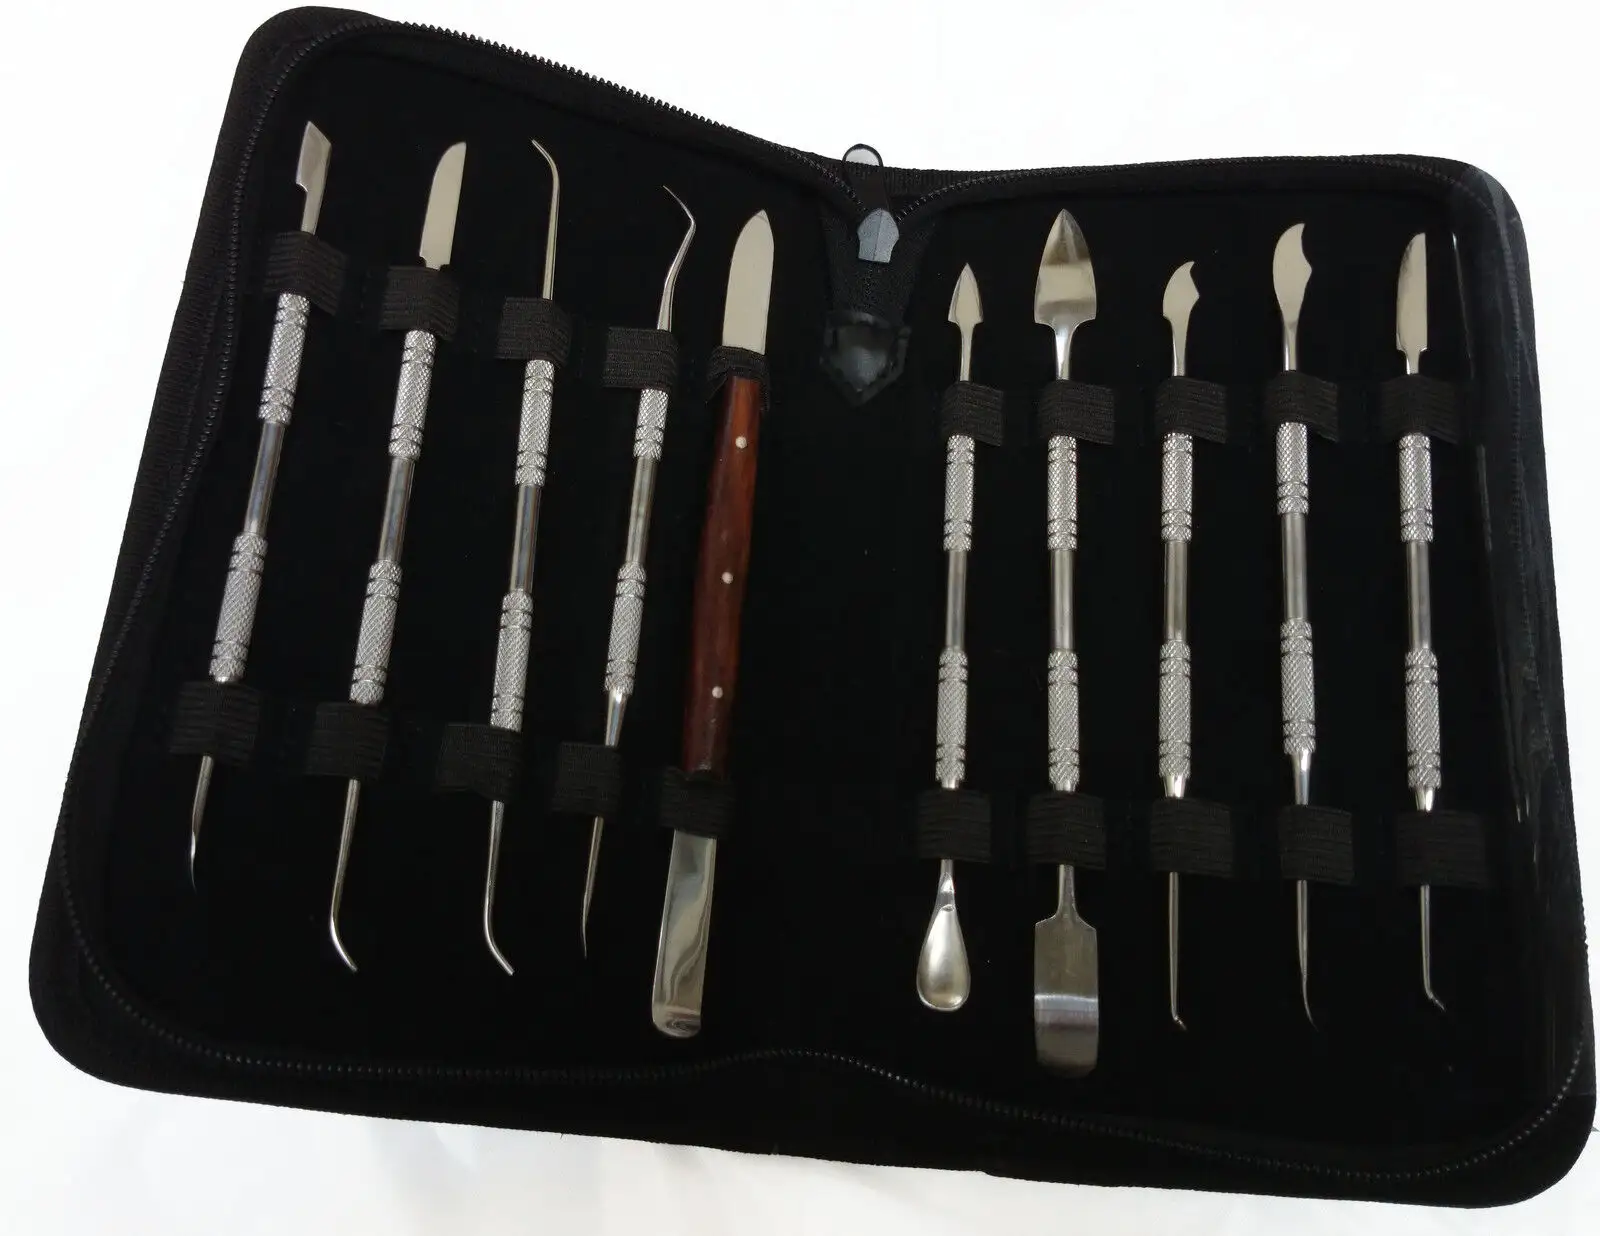 مجموعة أدوات عالية الجودة لطب الأسنان من SUNSHADE مجموعة أدوات طب الأسنان أداة لتنظيف الأسنان مجموعة أدوات للفك ومقشرة الأسنان صناعة باكستانية